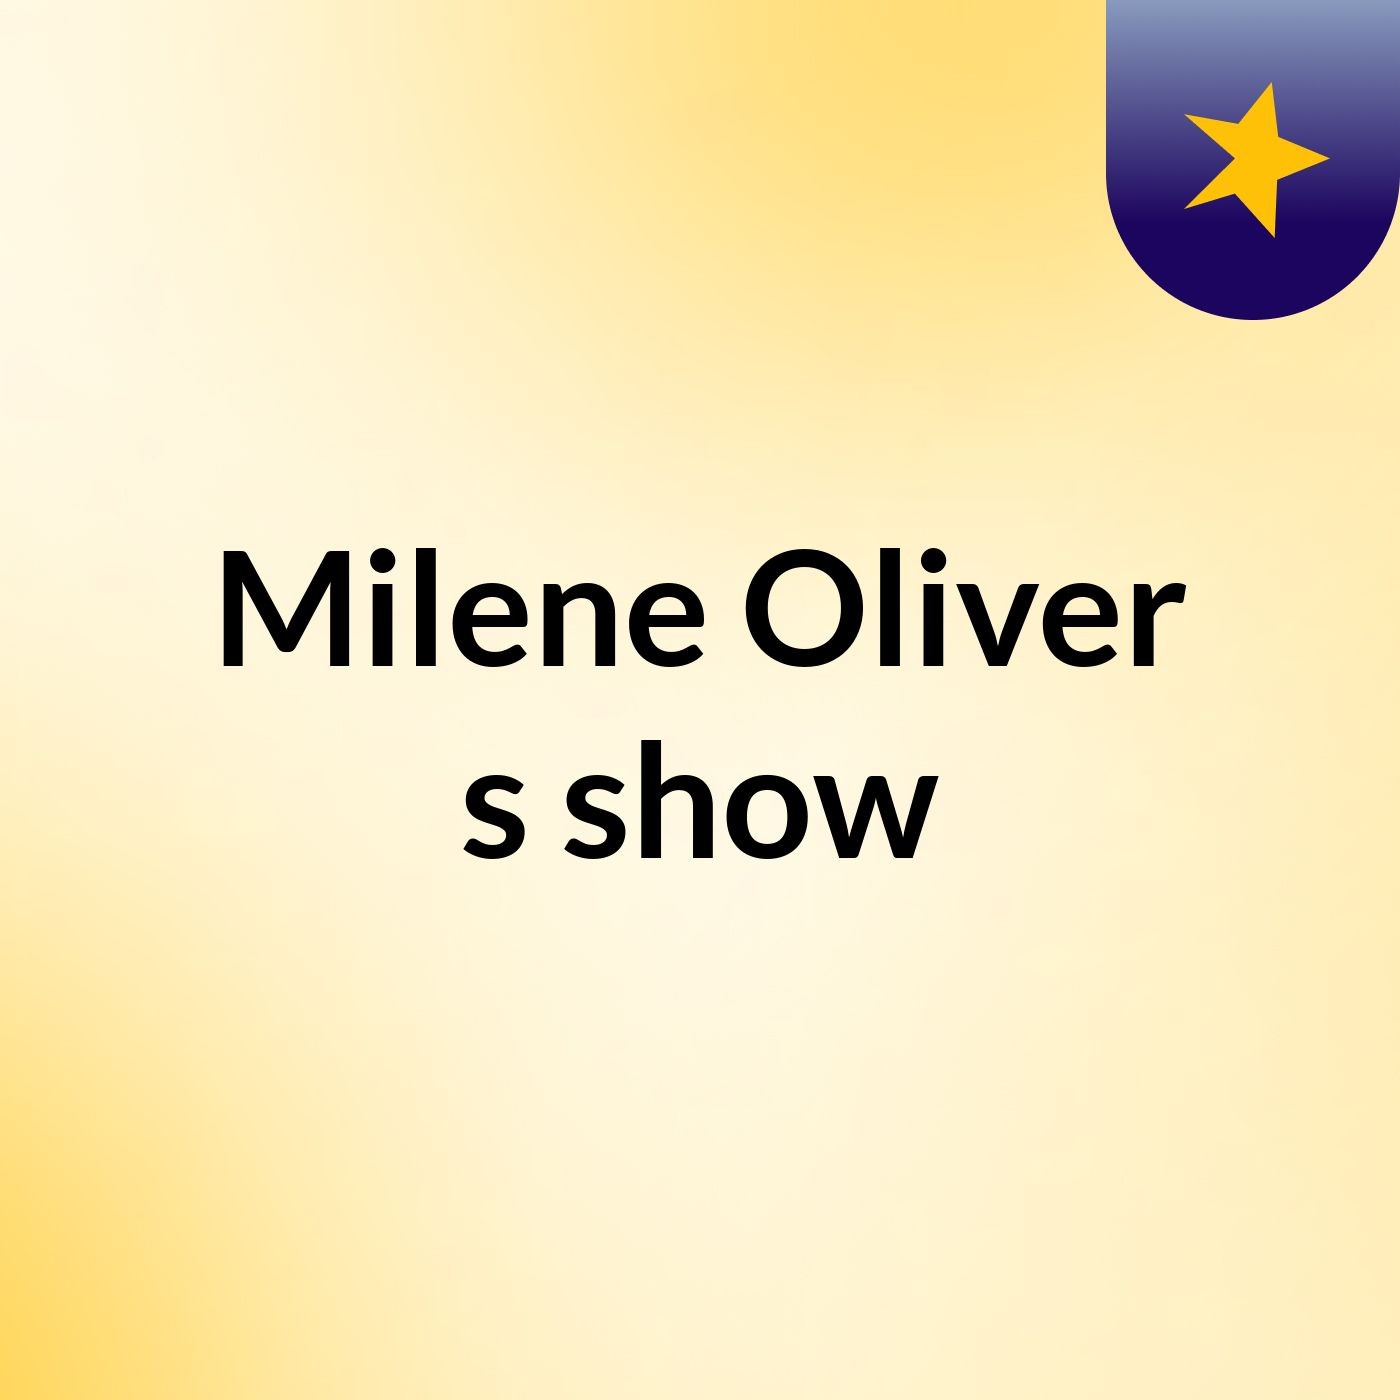 Milene Oliver's show